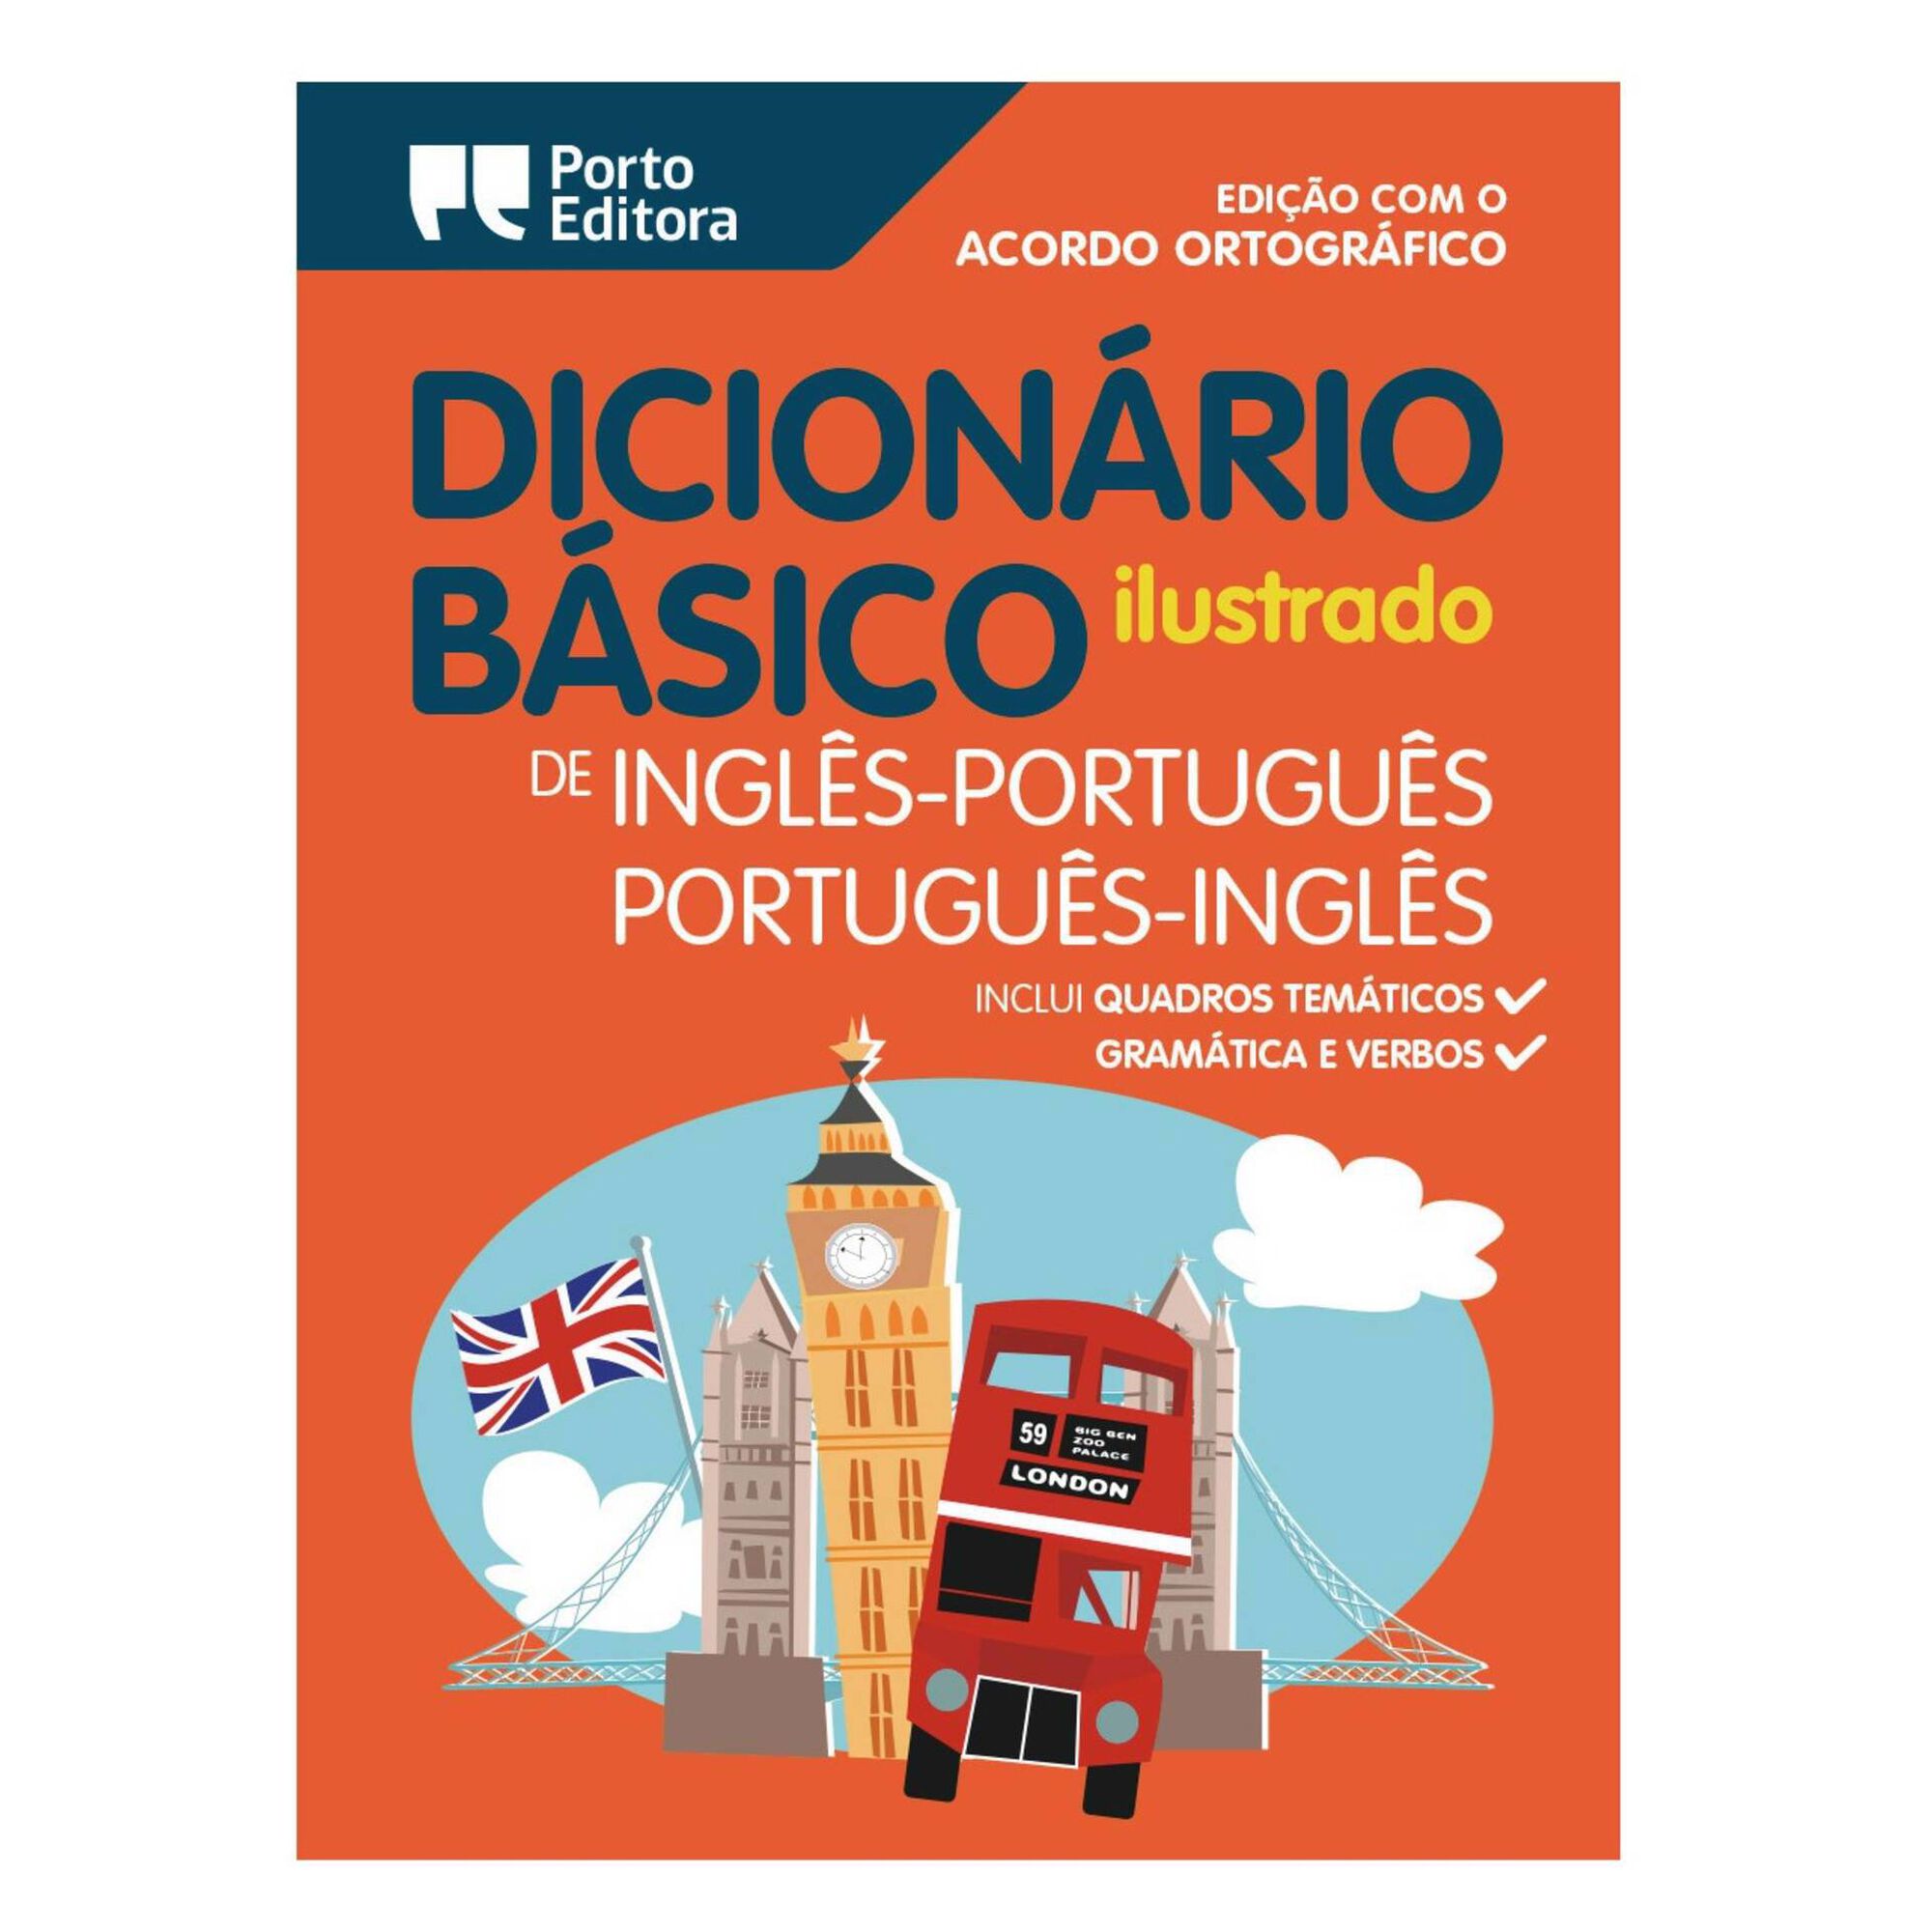 Dicionário Básico Ilustrado Português-Inglês/Inglês-Português